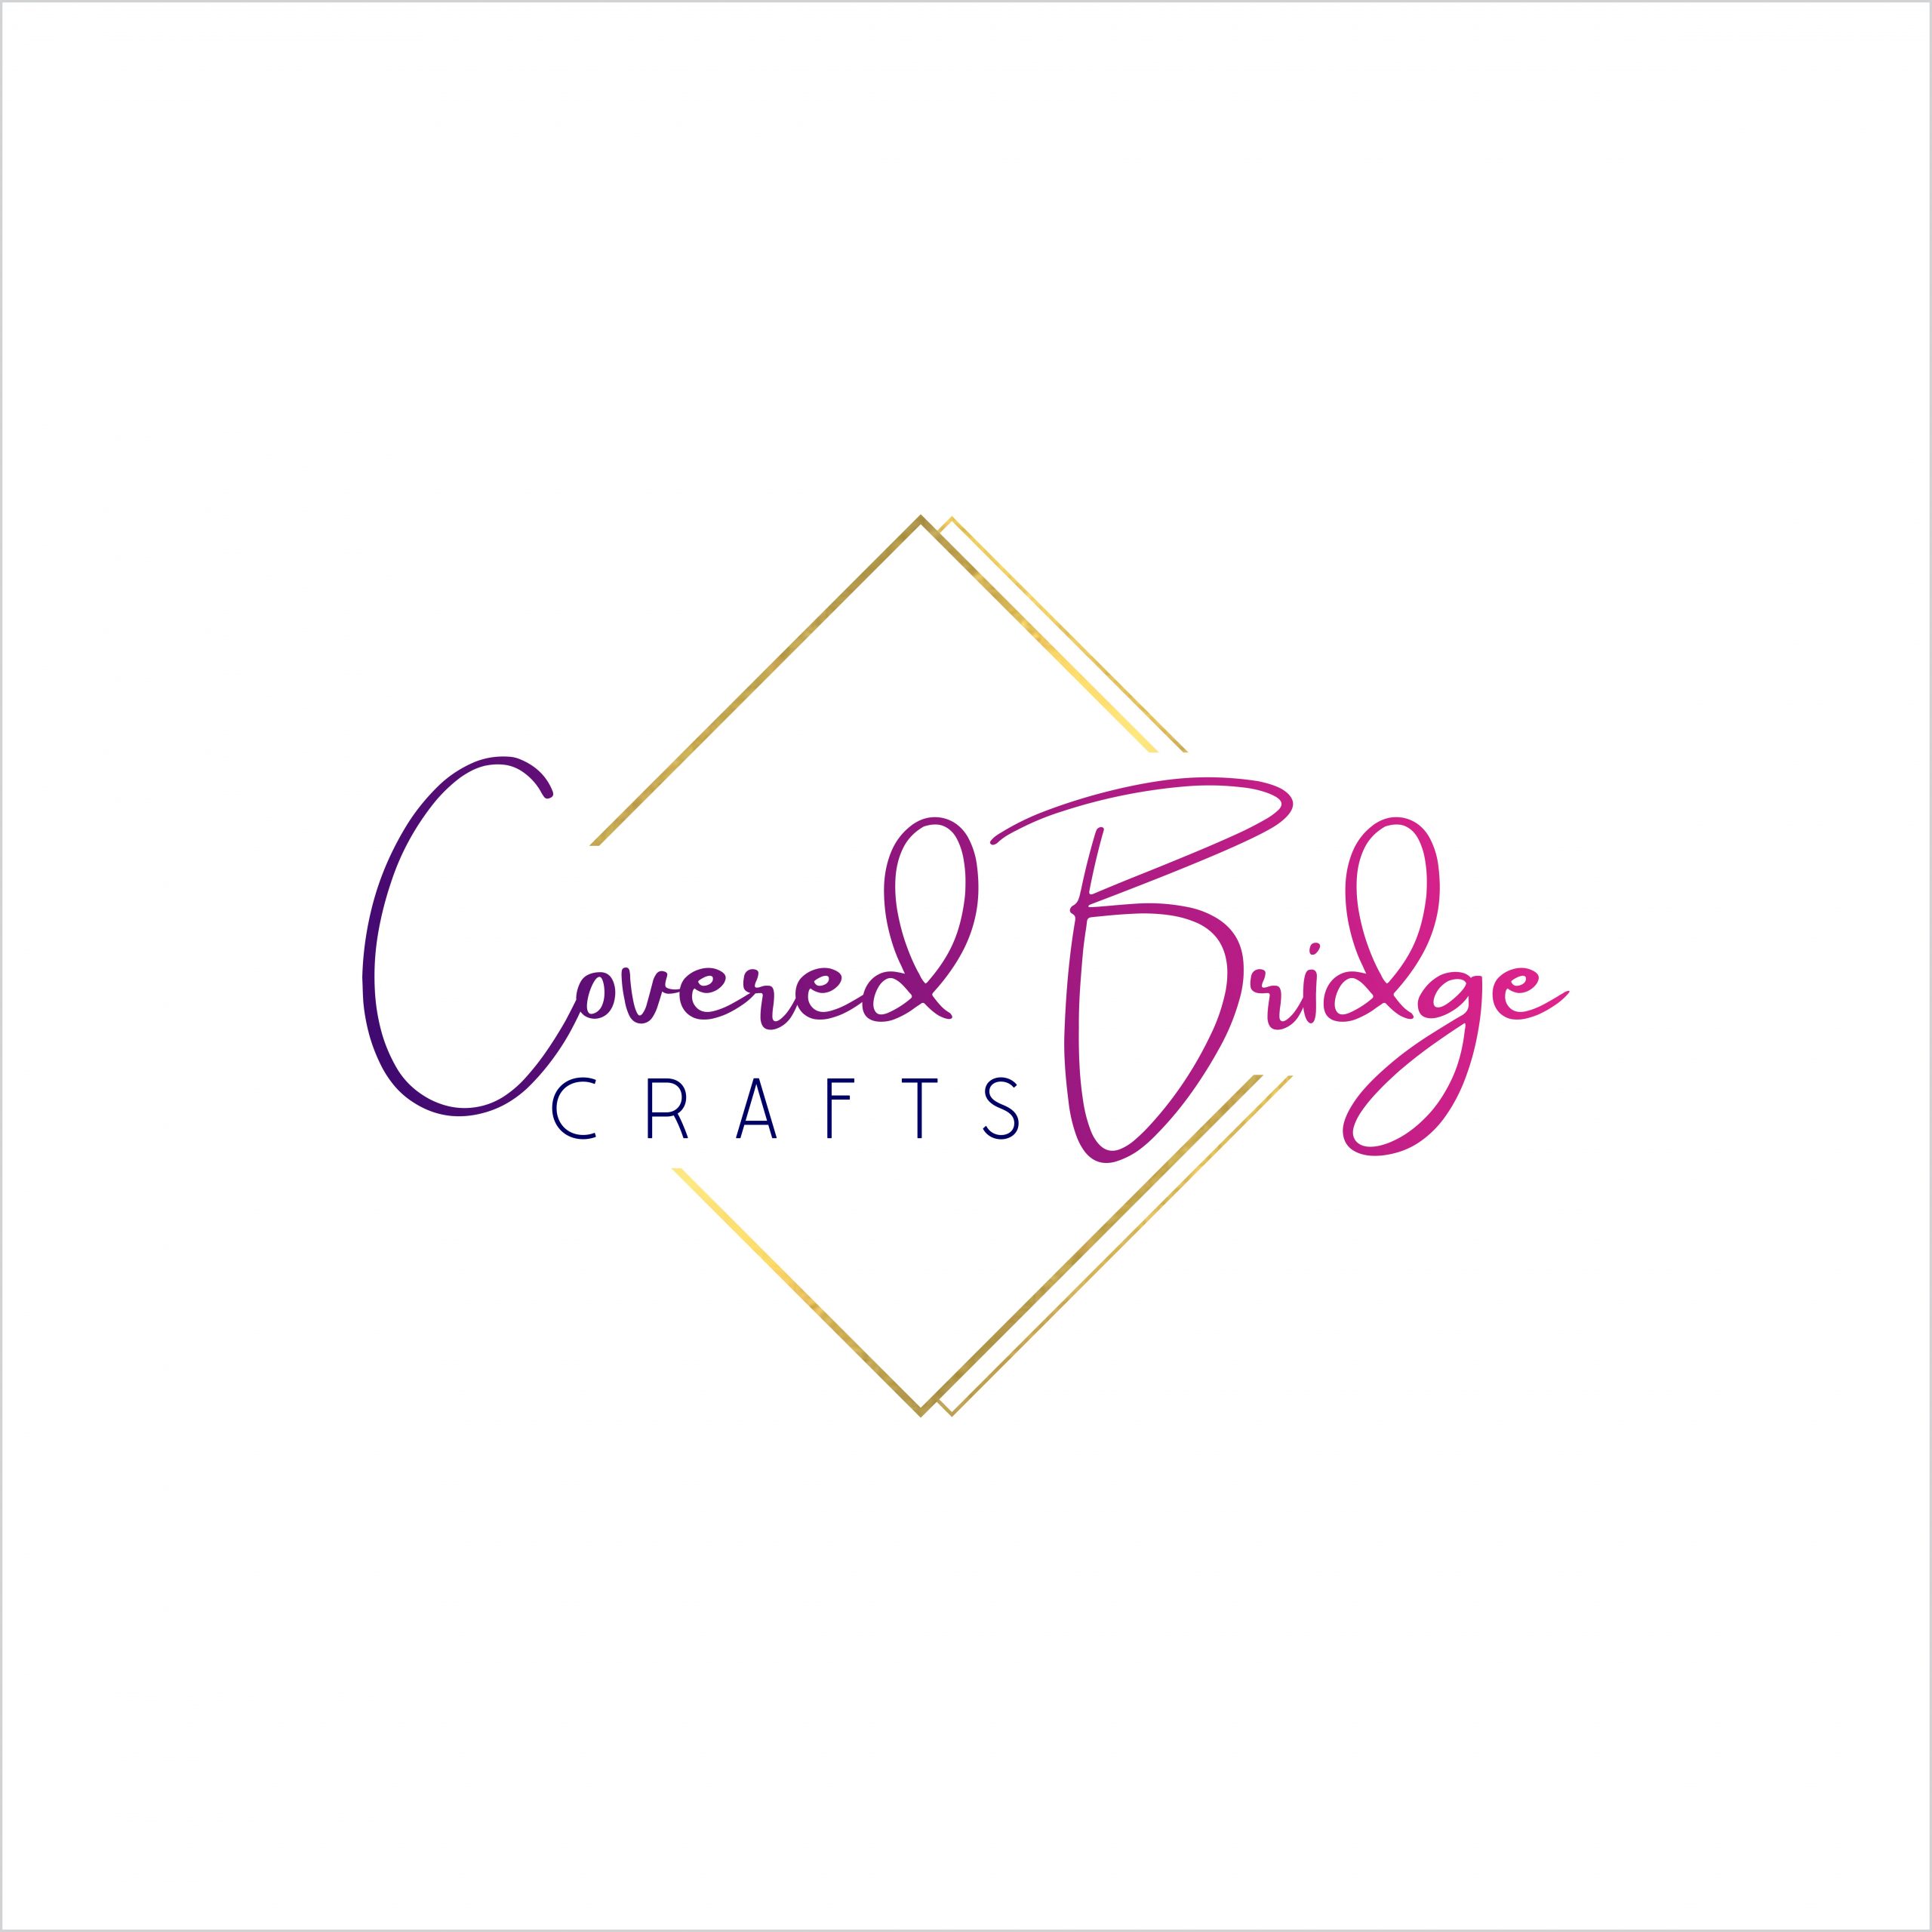 covered bridge crafts